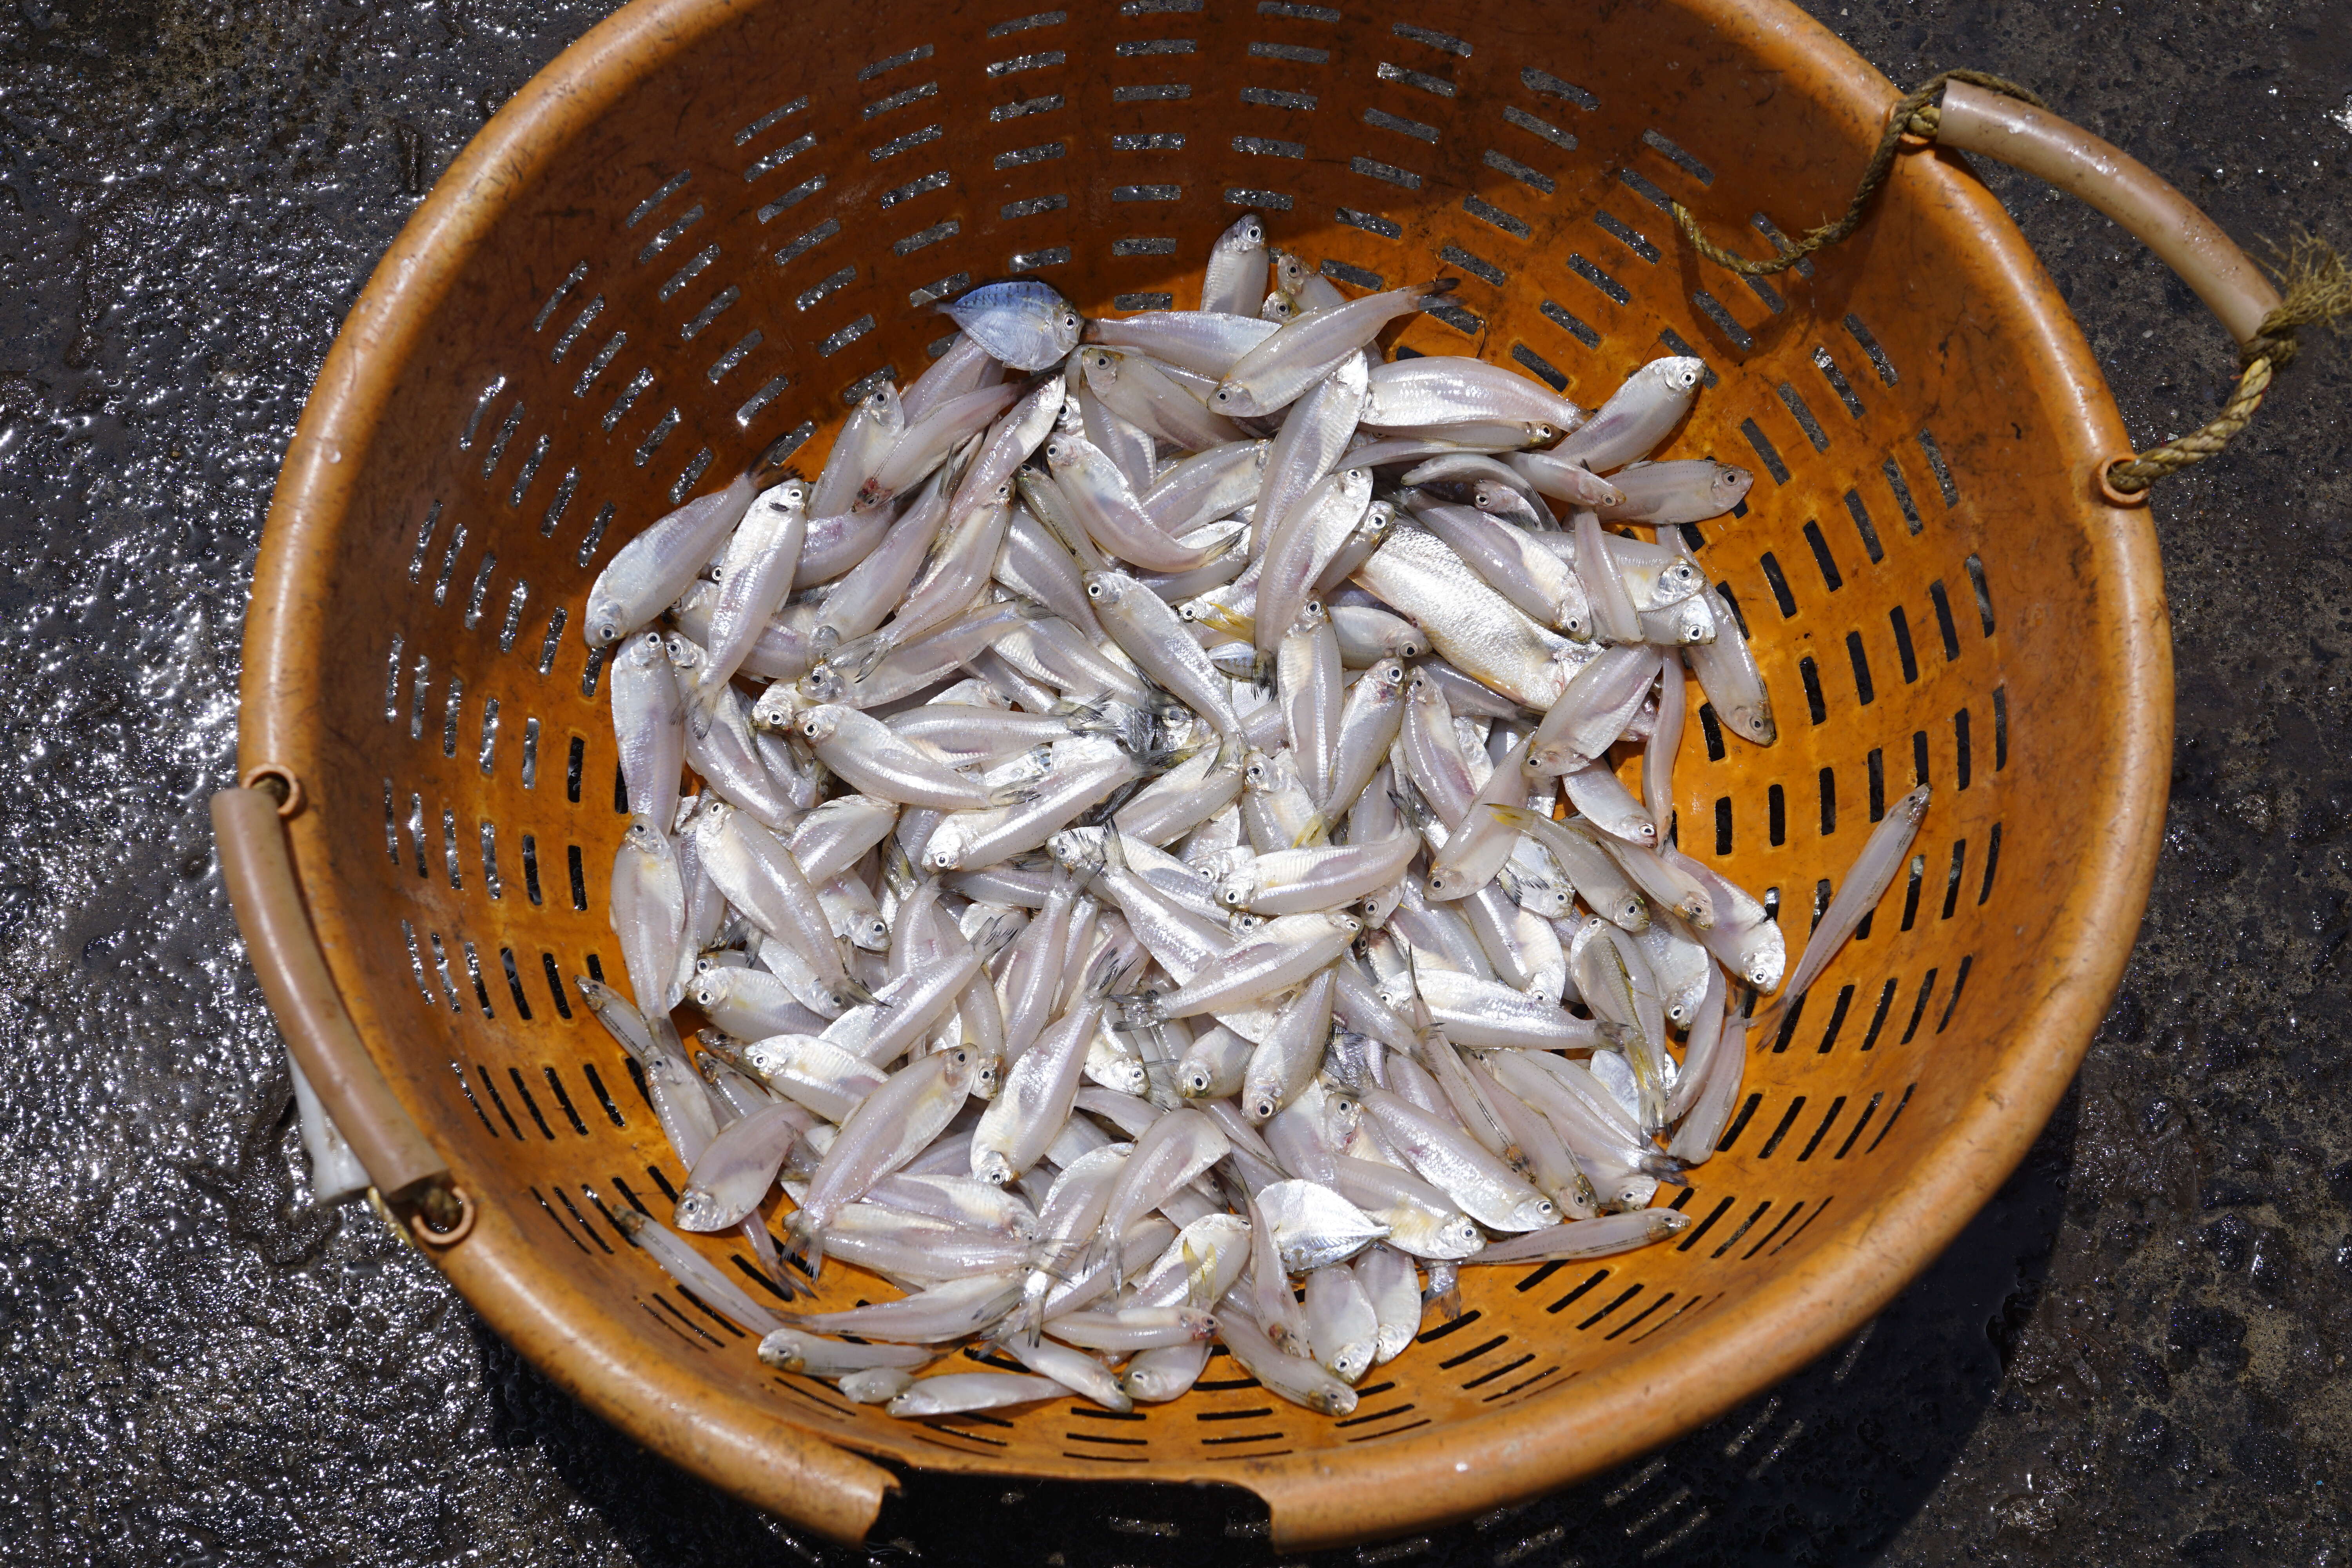 Image of mackerels